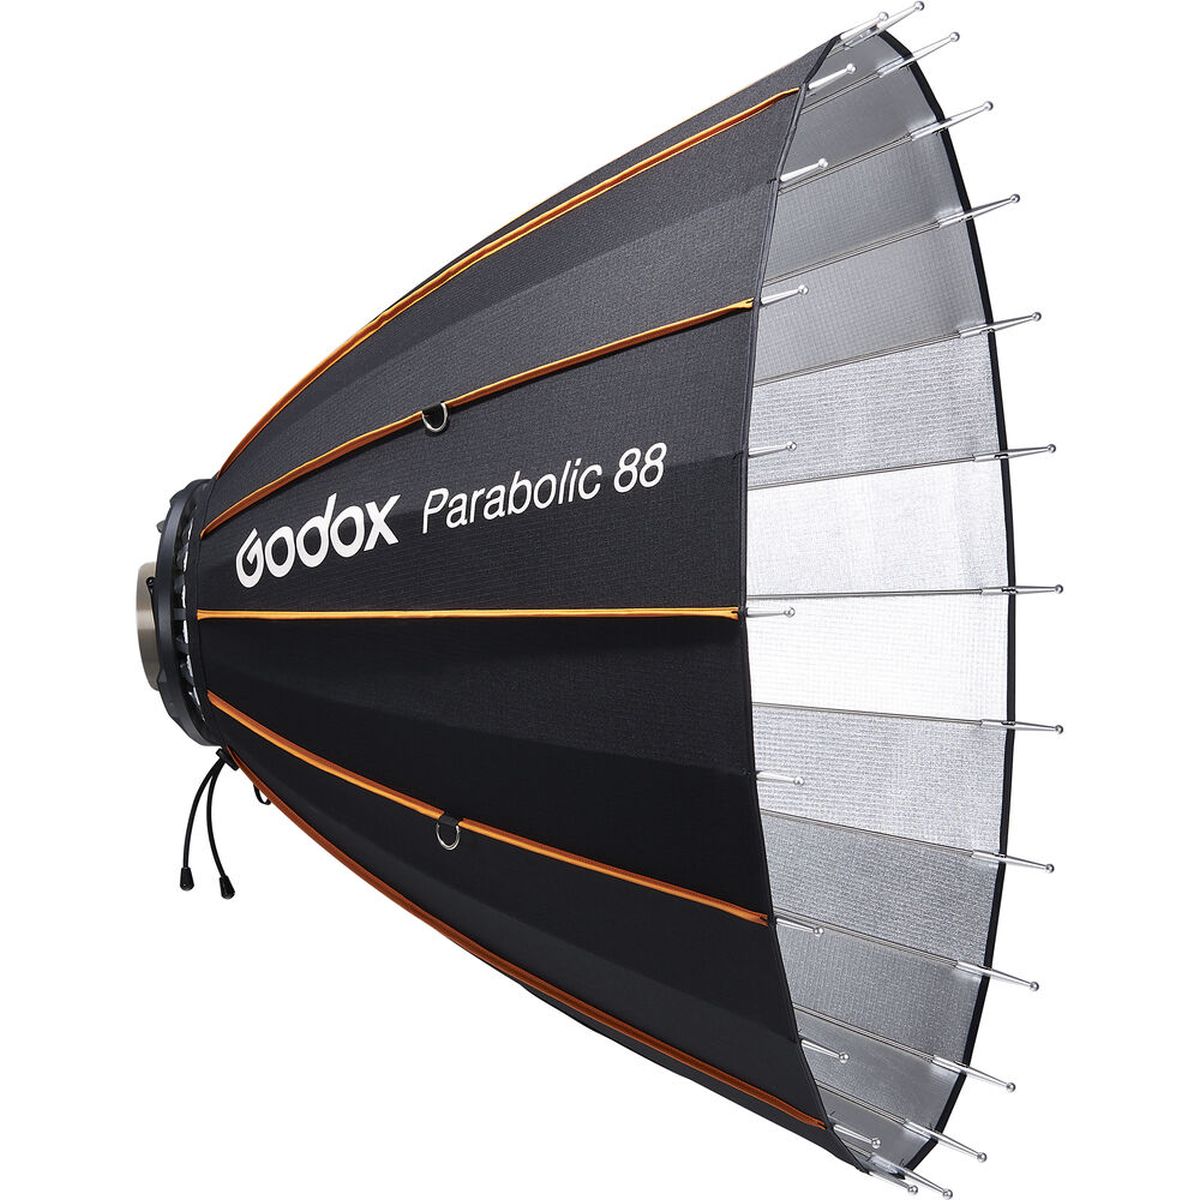 Godox Parabolreflektor 88